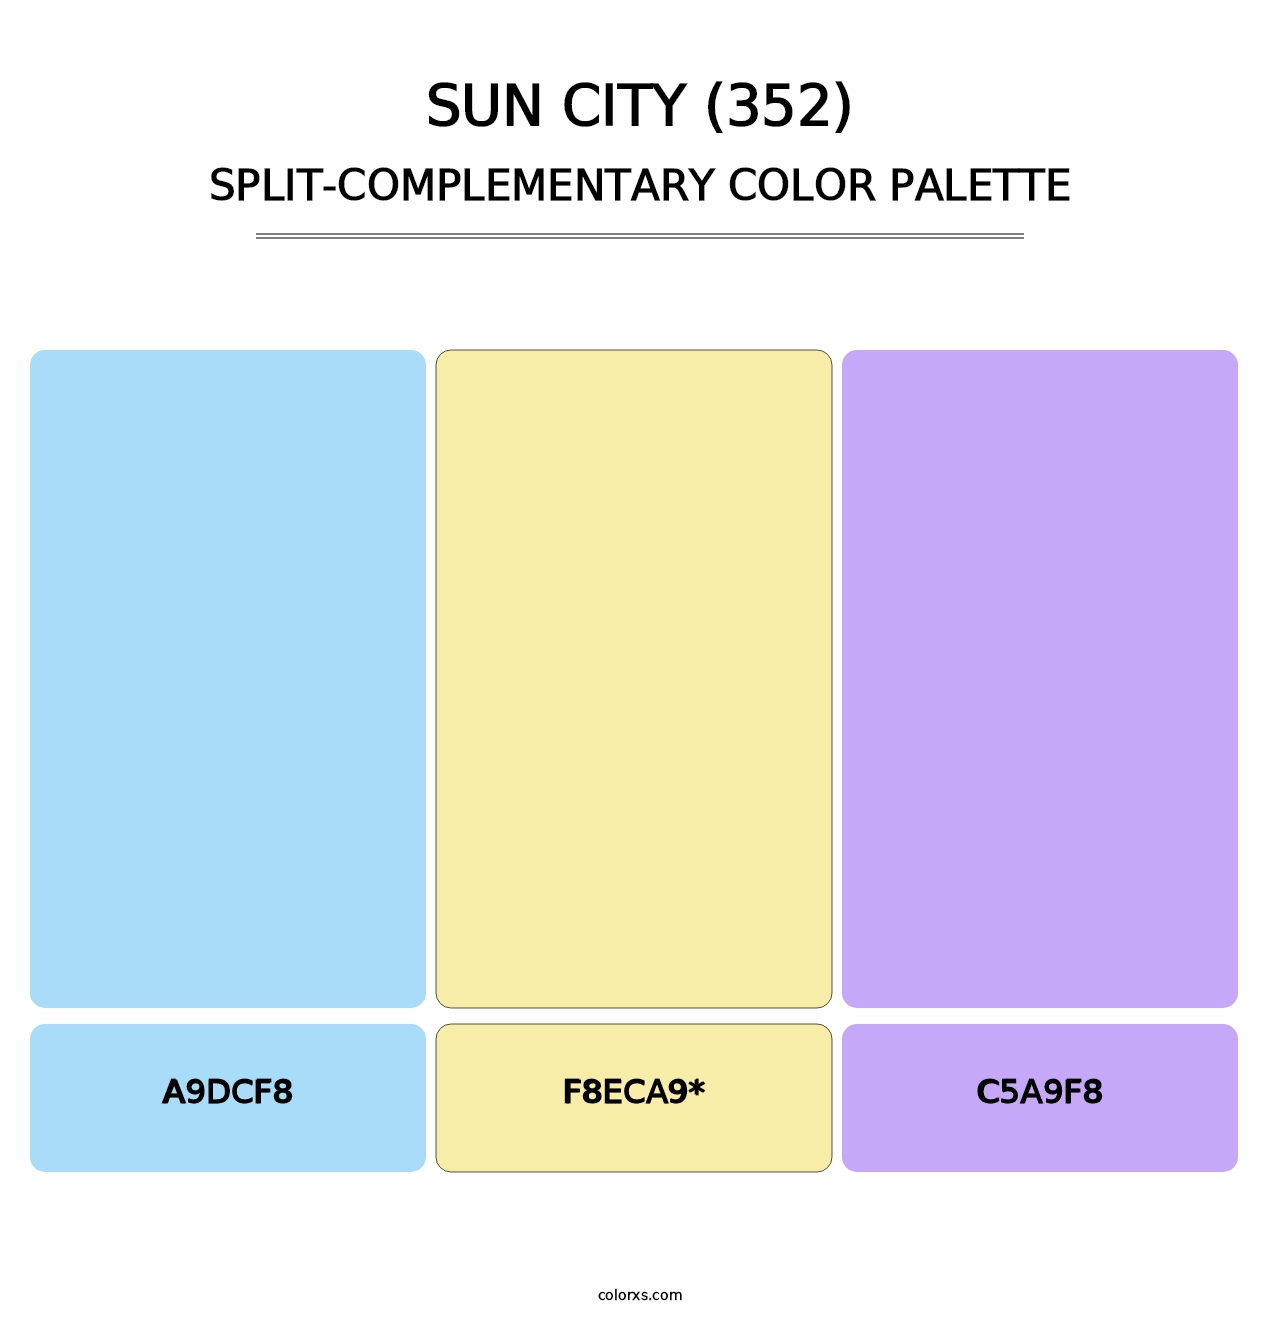 Sun City (352) - Split-Complementary Color Palette